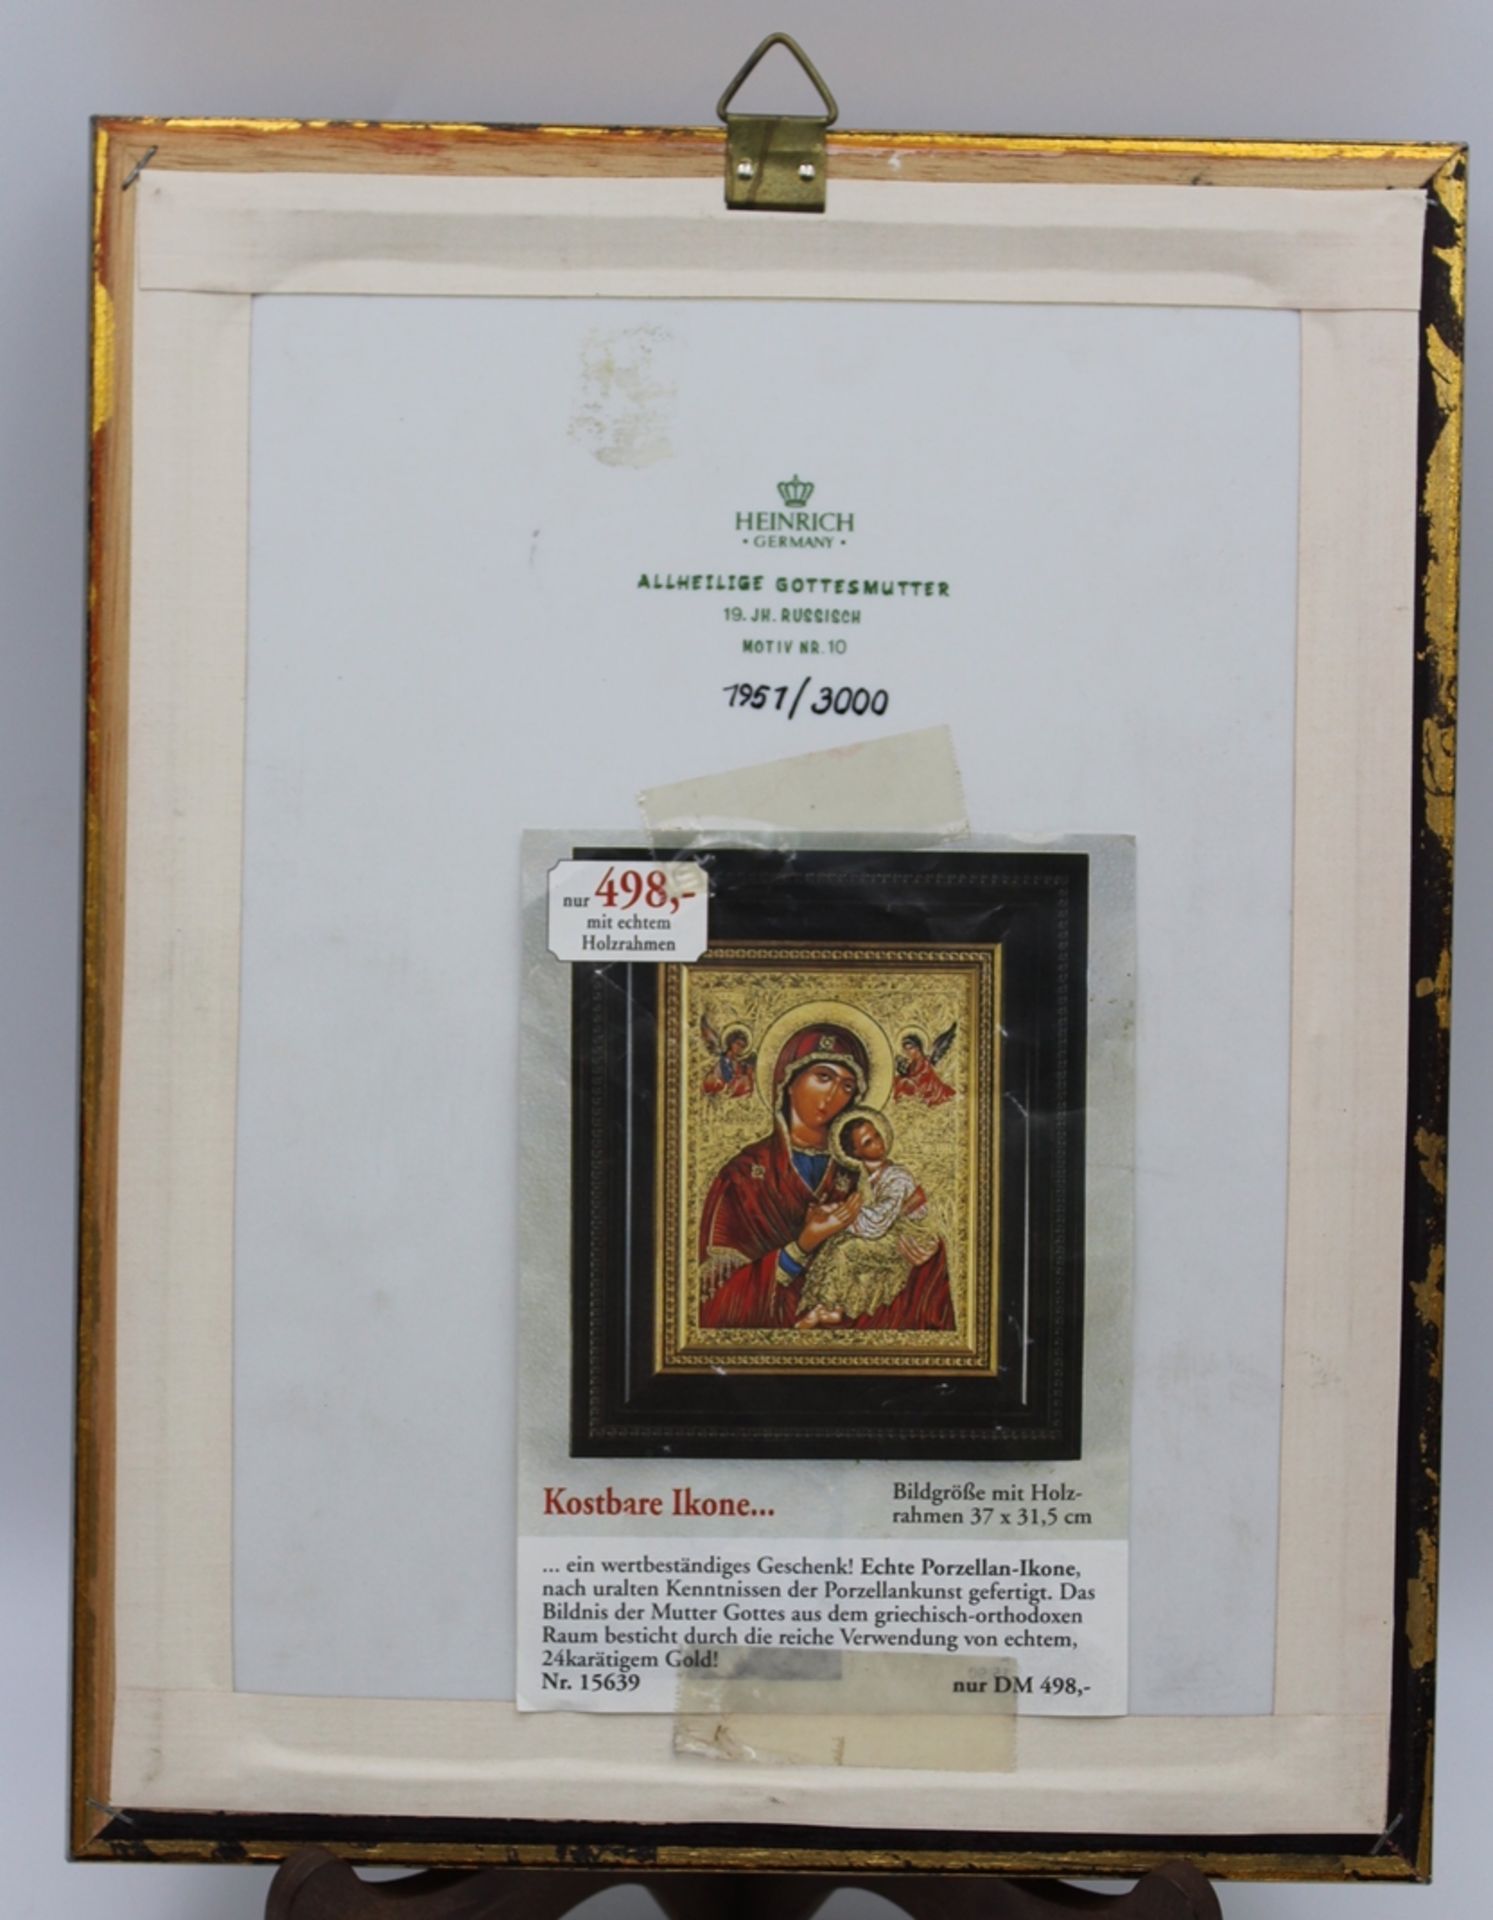 Heinrich-Ikone, Allheilige Gottesmutter, Motiv. 10, limit. 1951/3000, gerahmt, RG 29 x 22,5cm. - Bild 3 aus 4